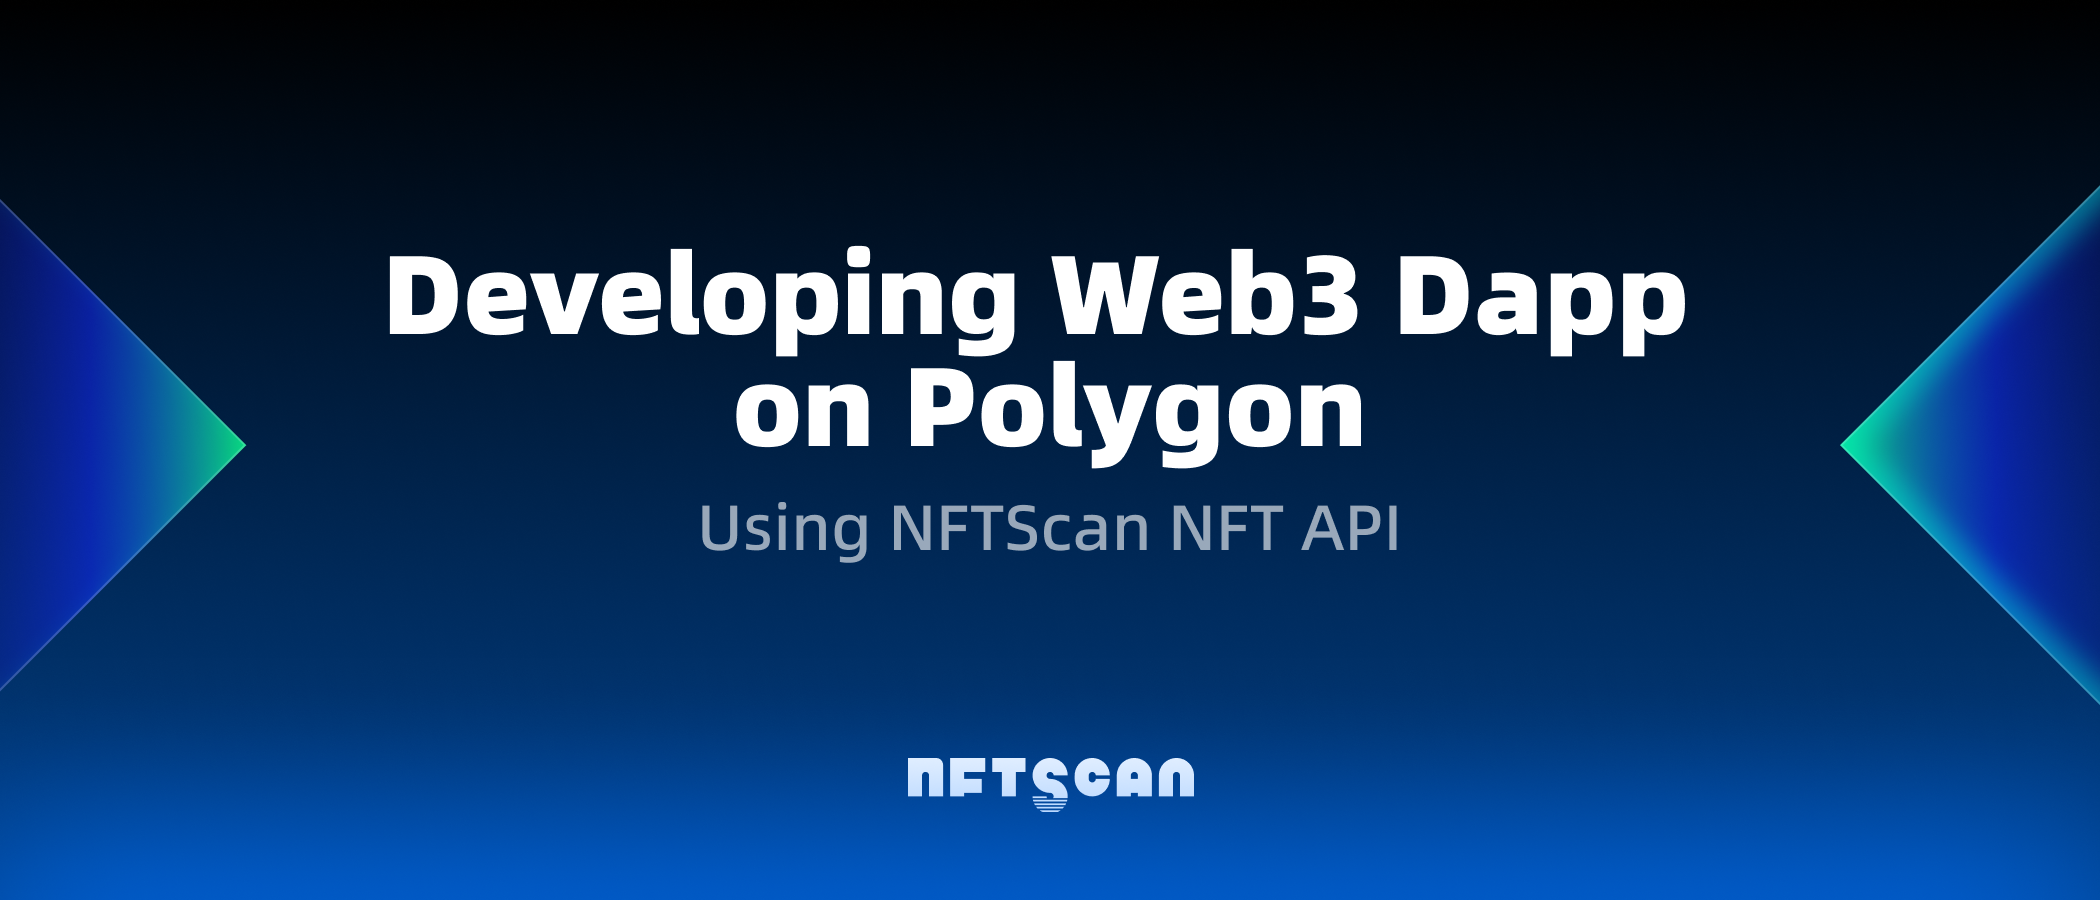 如何使用 NFTScan NFT API 在 Polygon 网络上开发 Web3 应用